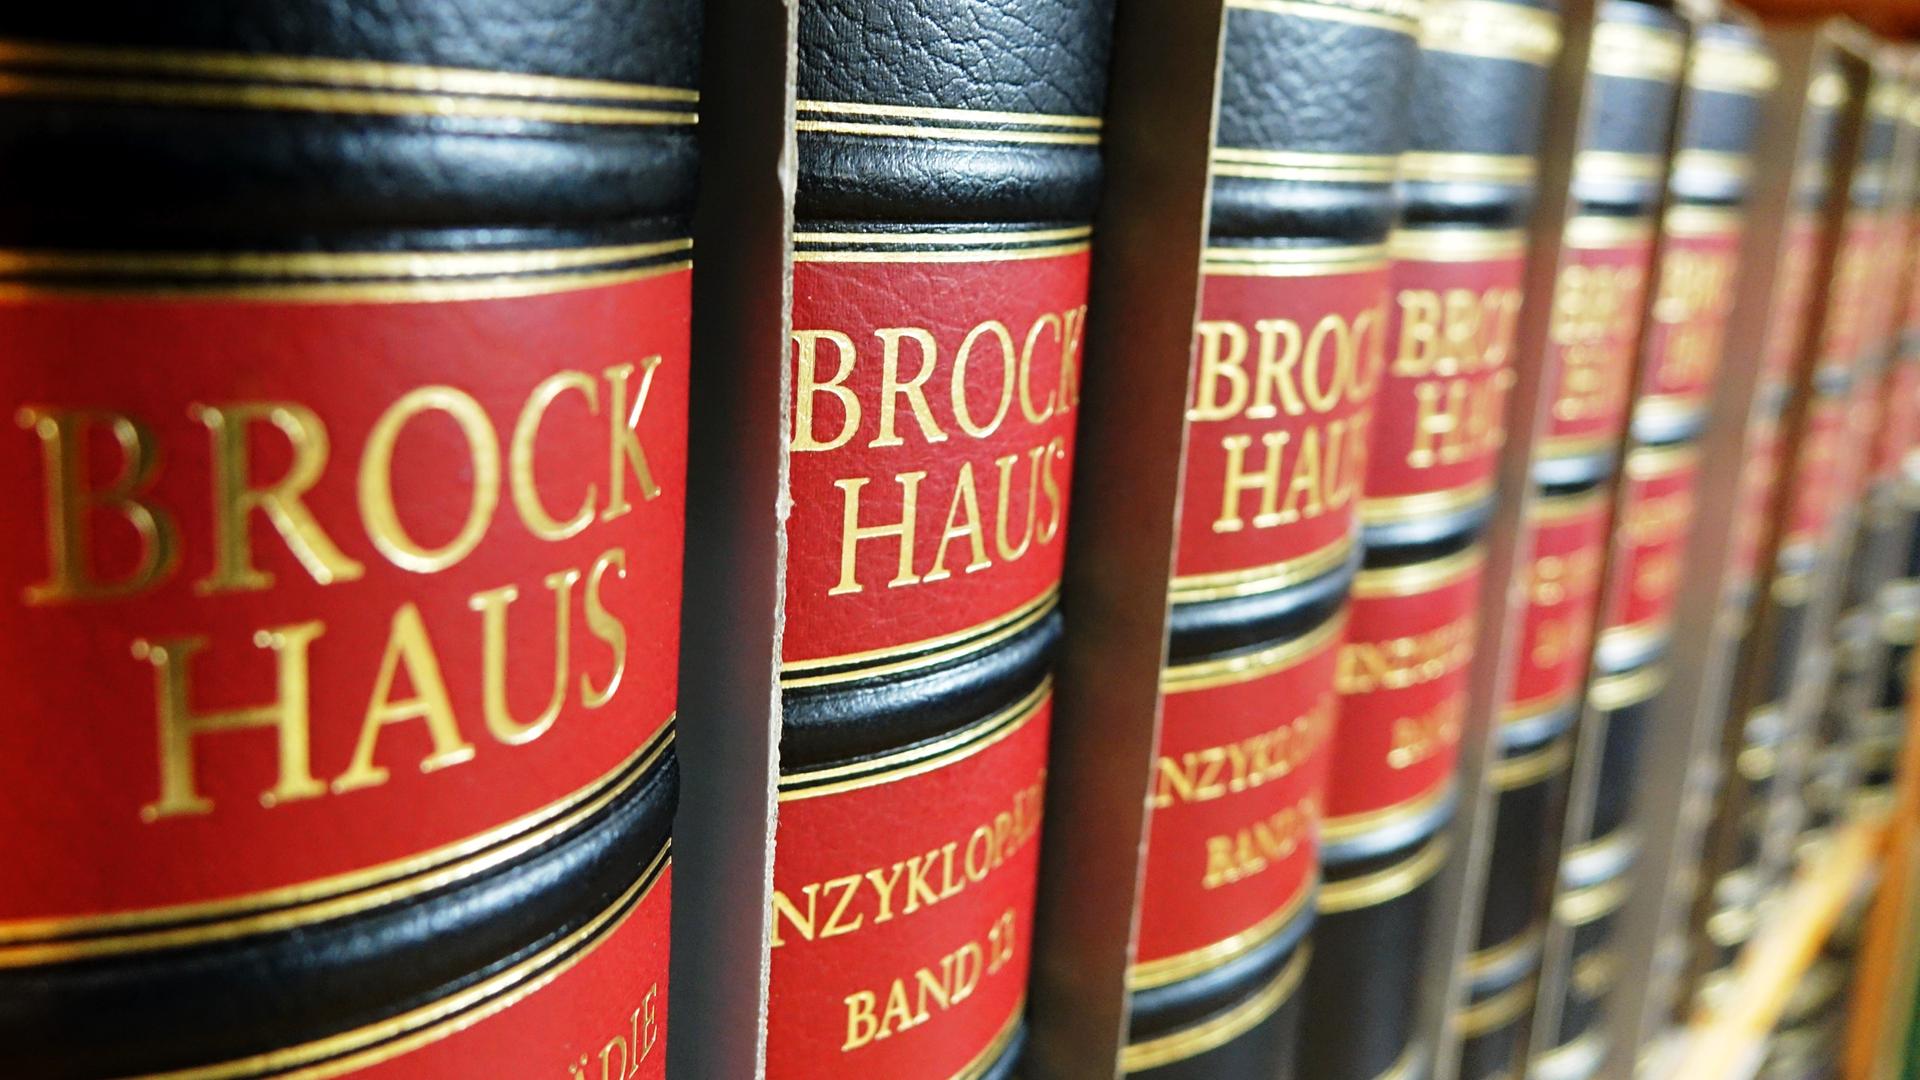 Mehrere Bücher der Reihe Brockhaus stehen in Berlin in einem Bücherregal